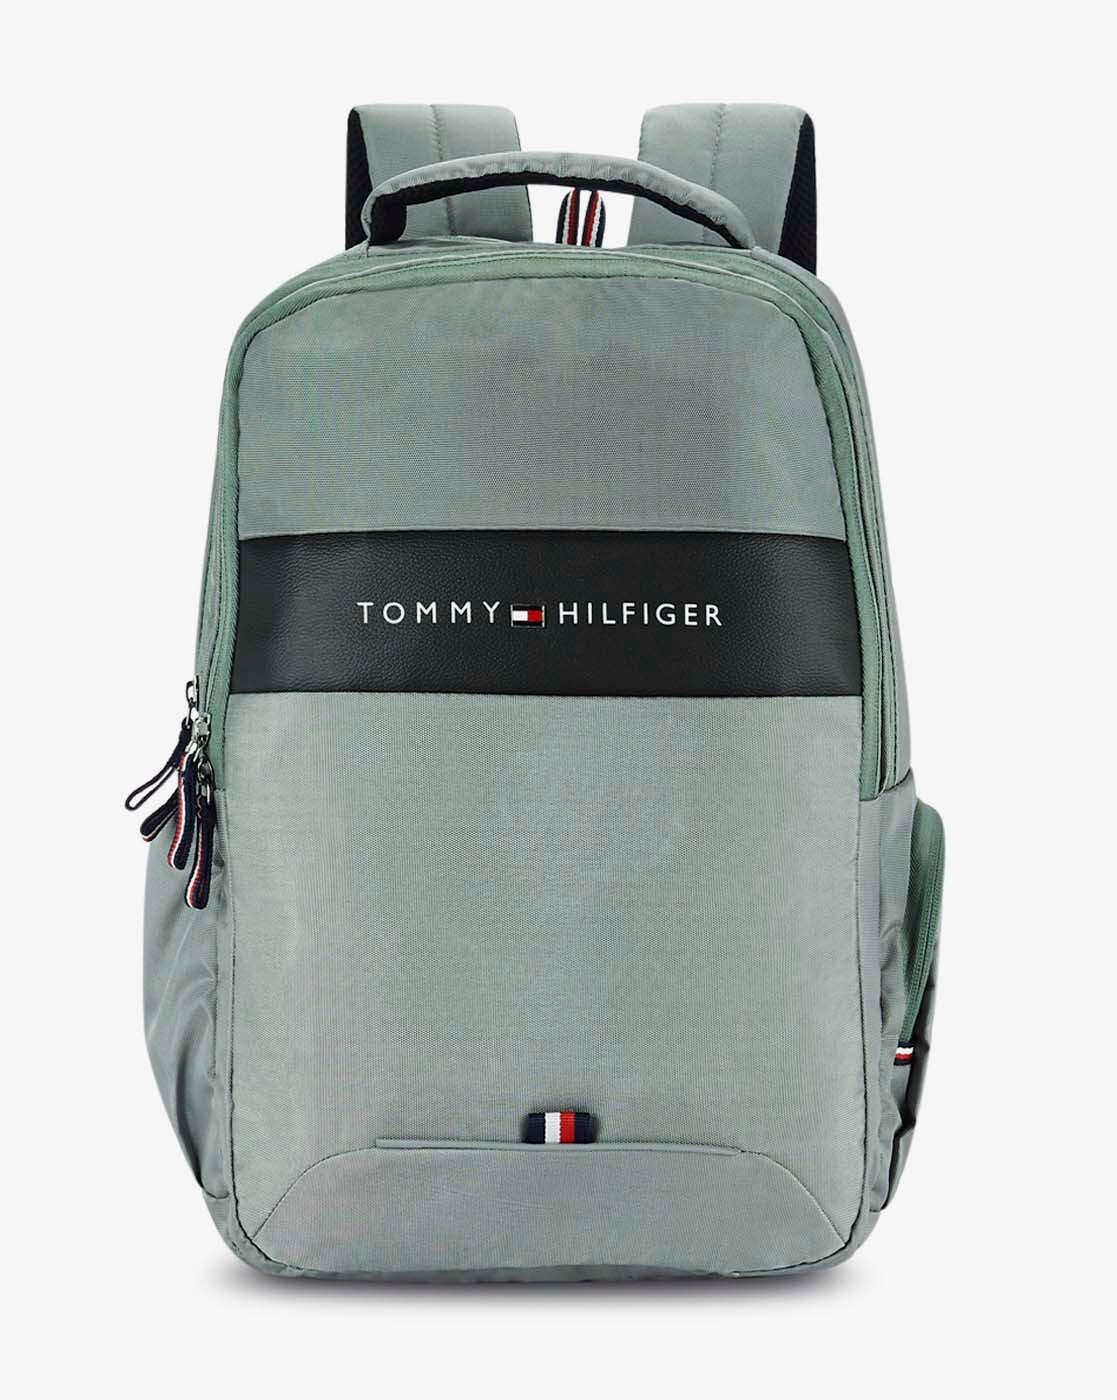 tommy hilfiger laptop backpack